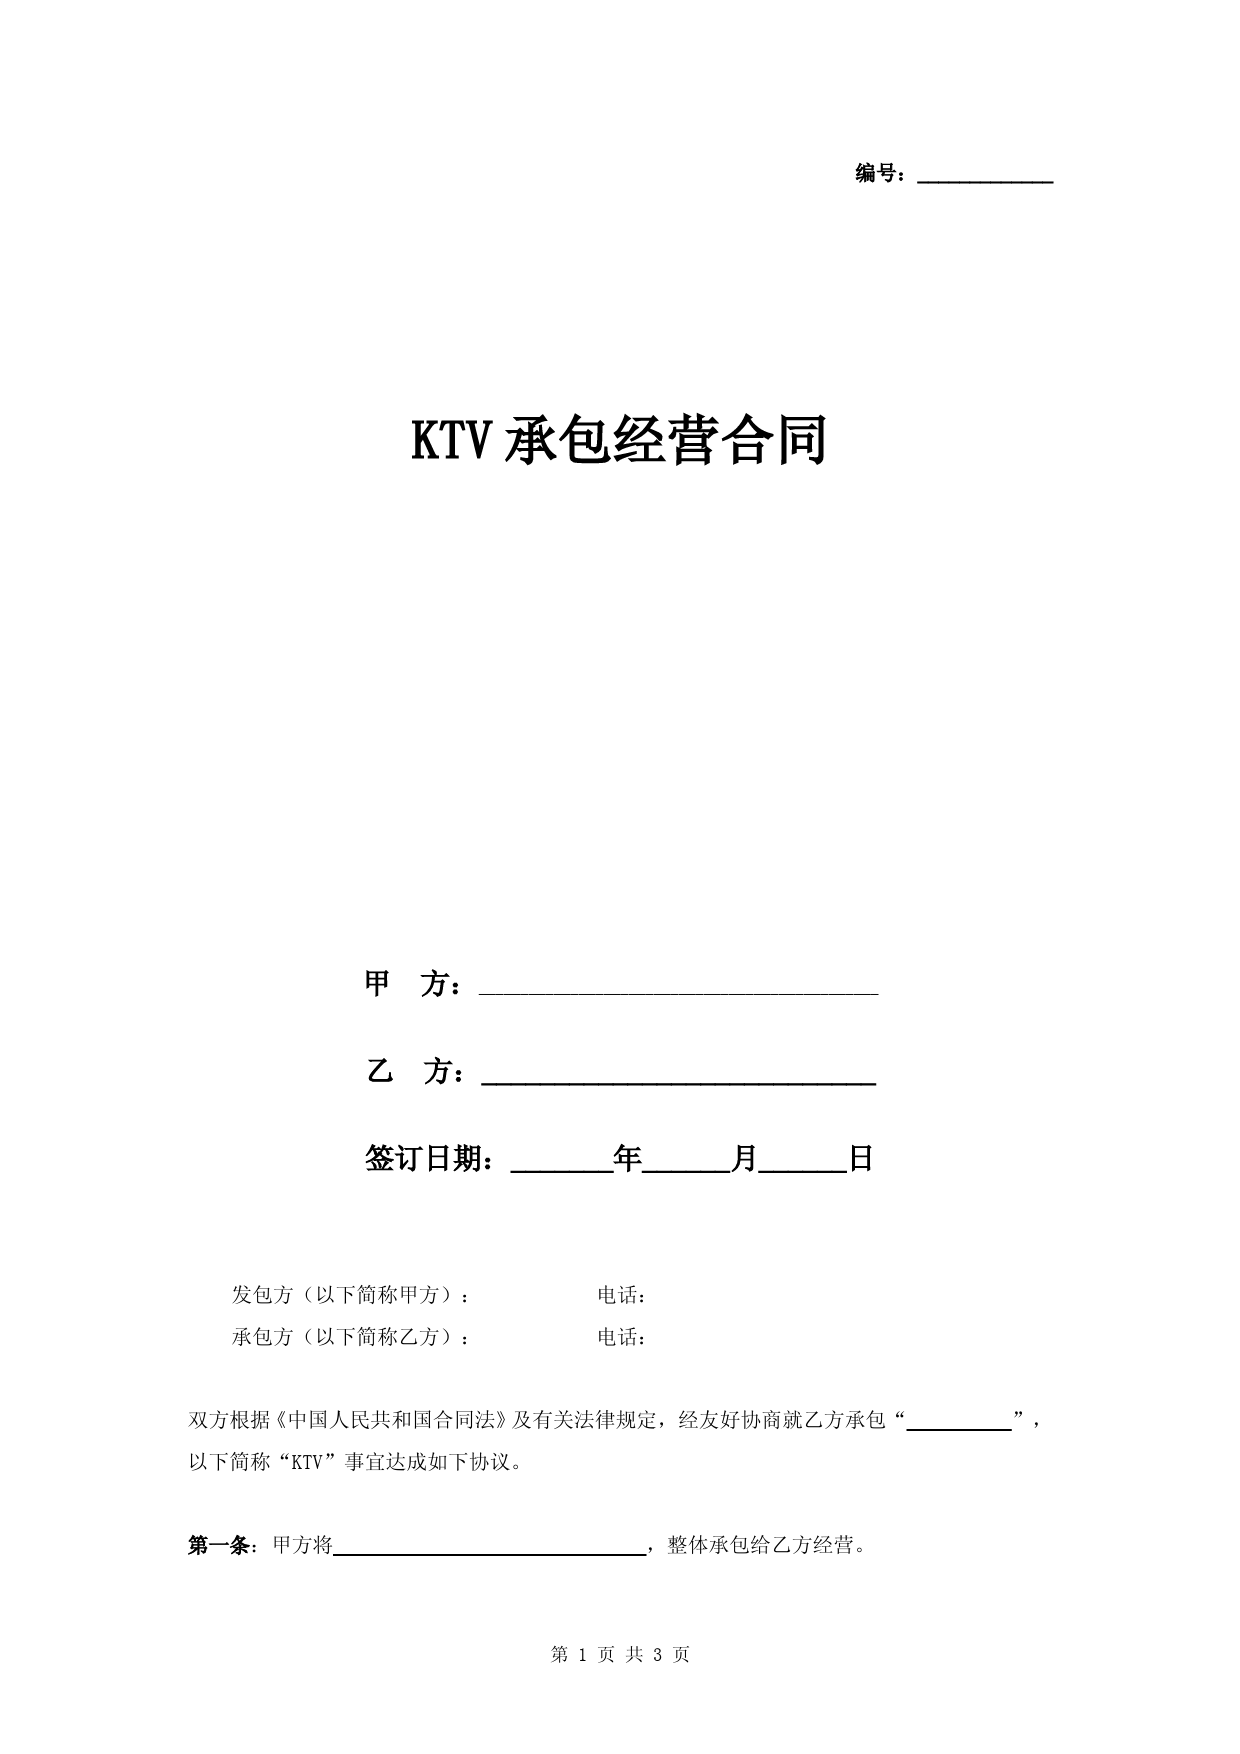 KTV承包经营合同协议书范本-模板